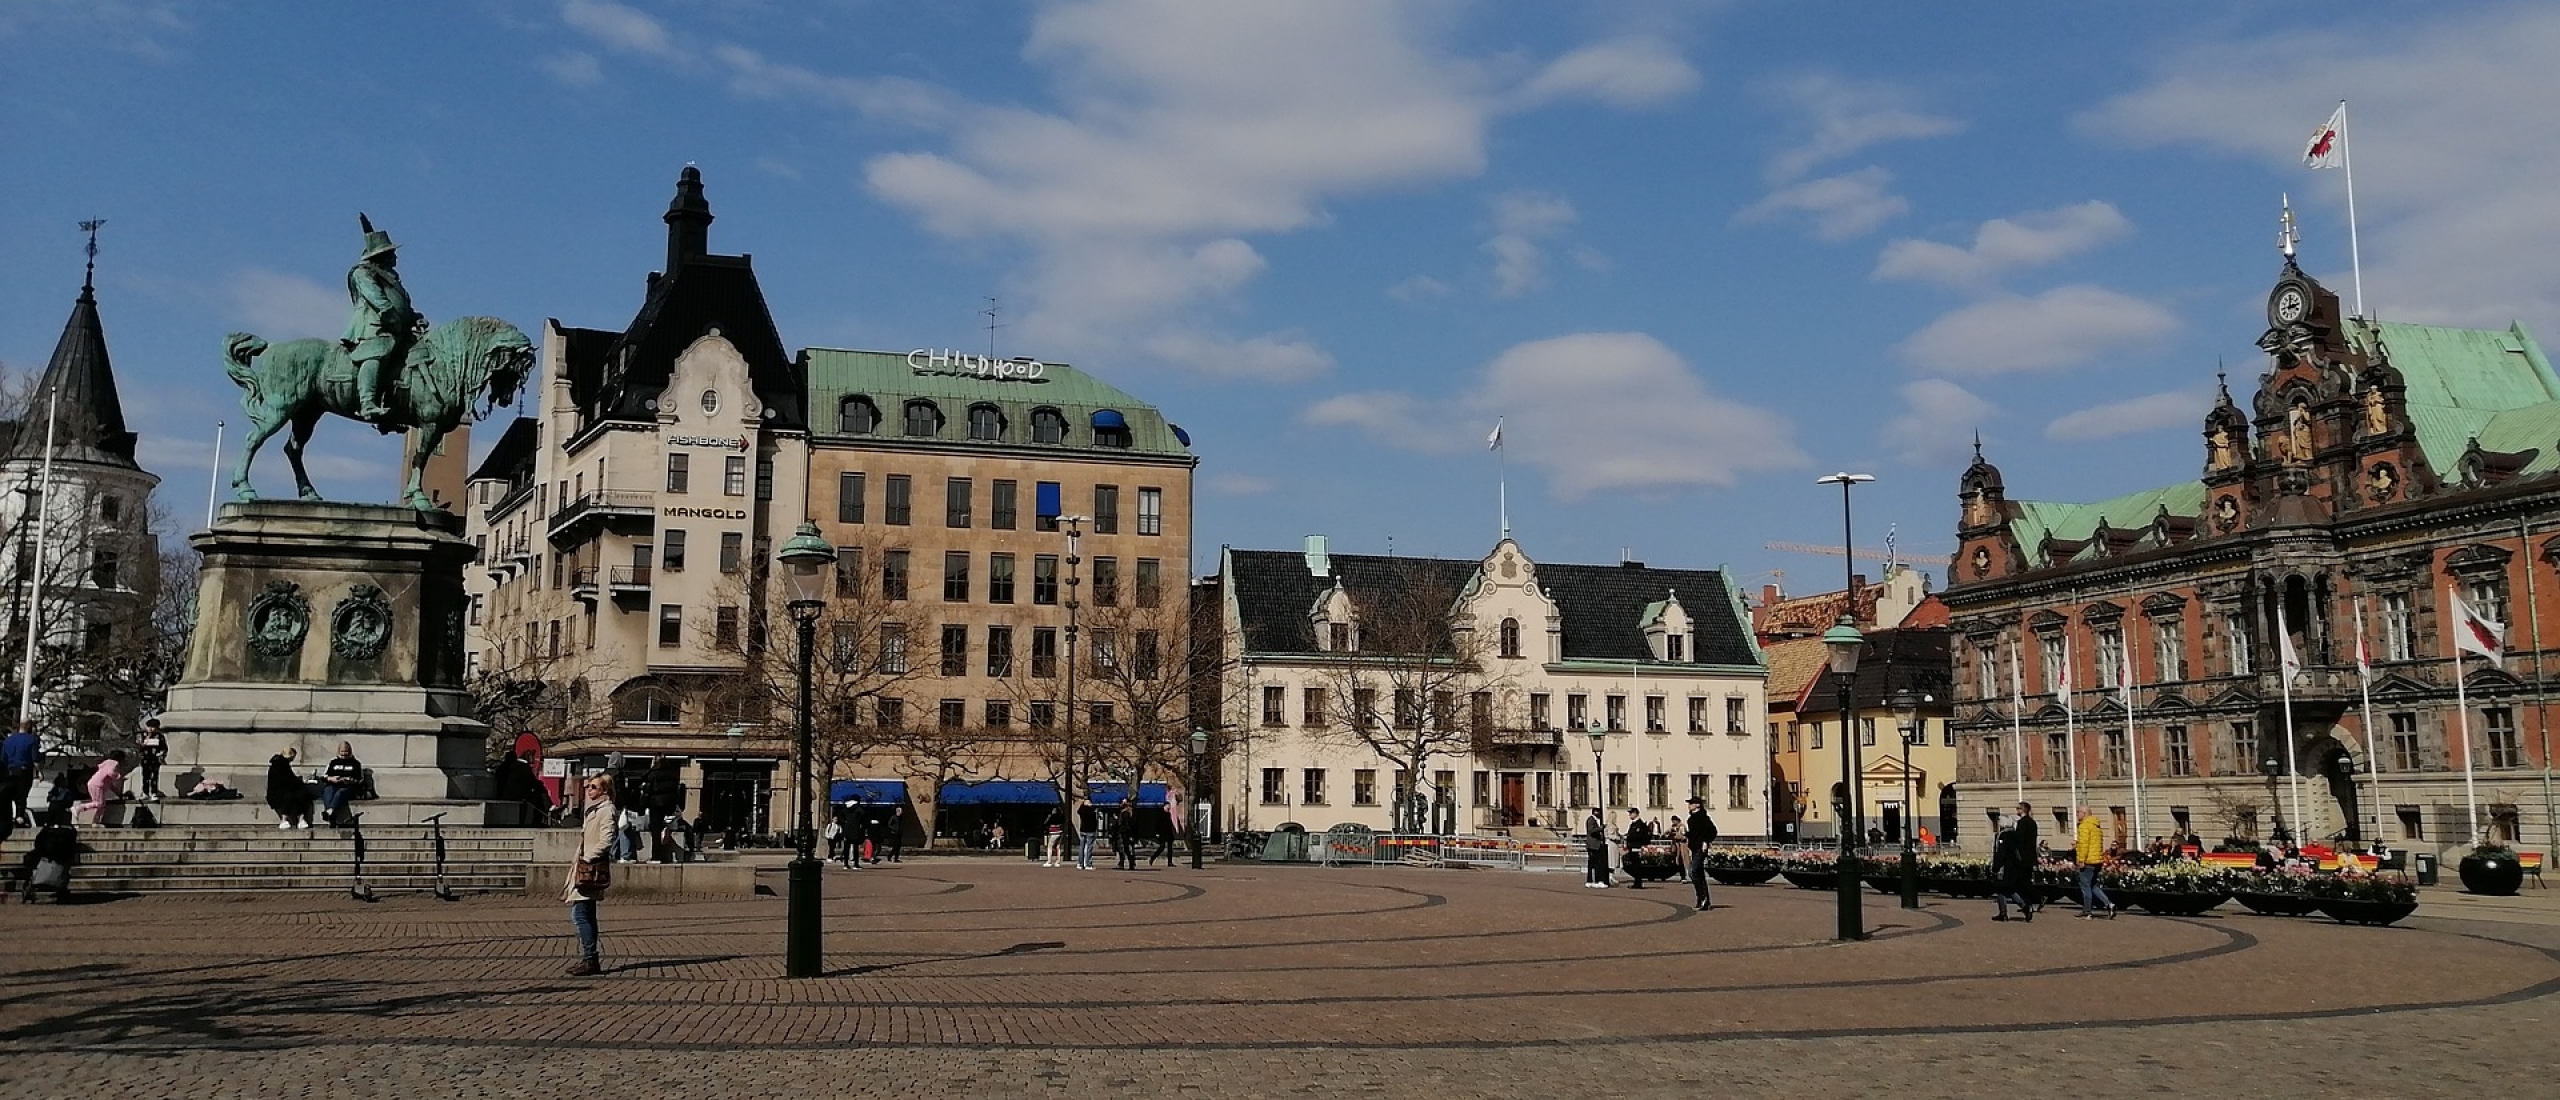 stedentrip-malmö-stortorget-plein